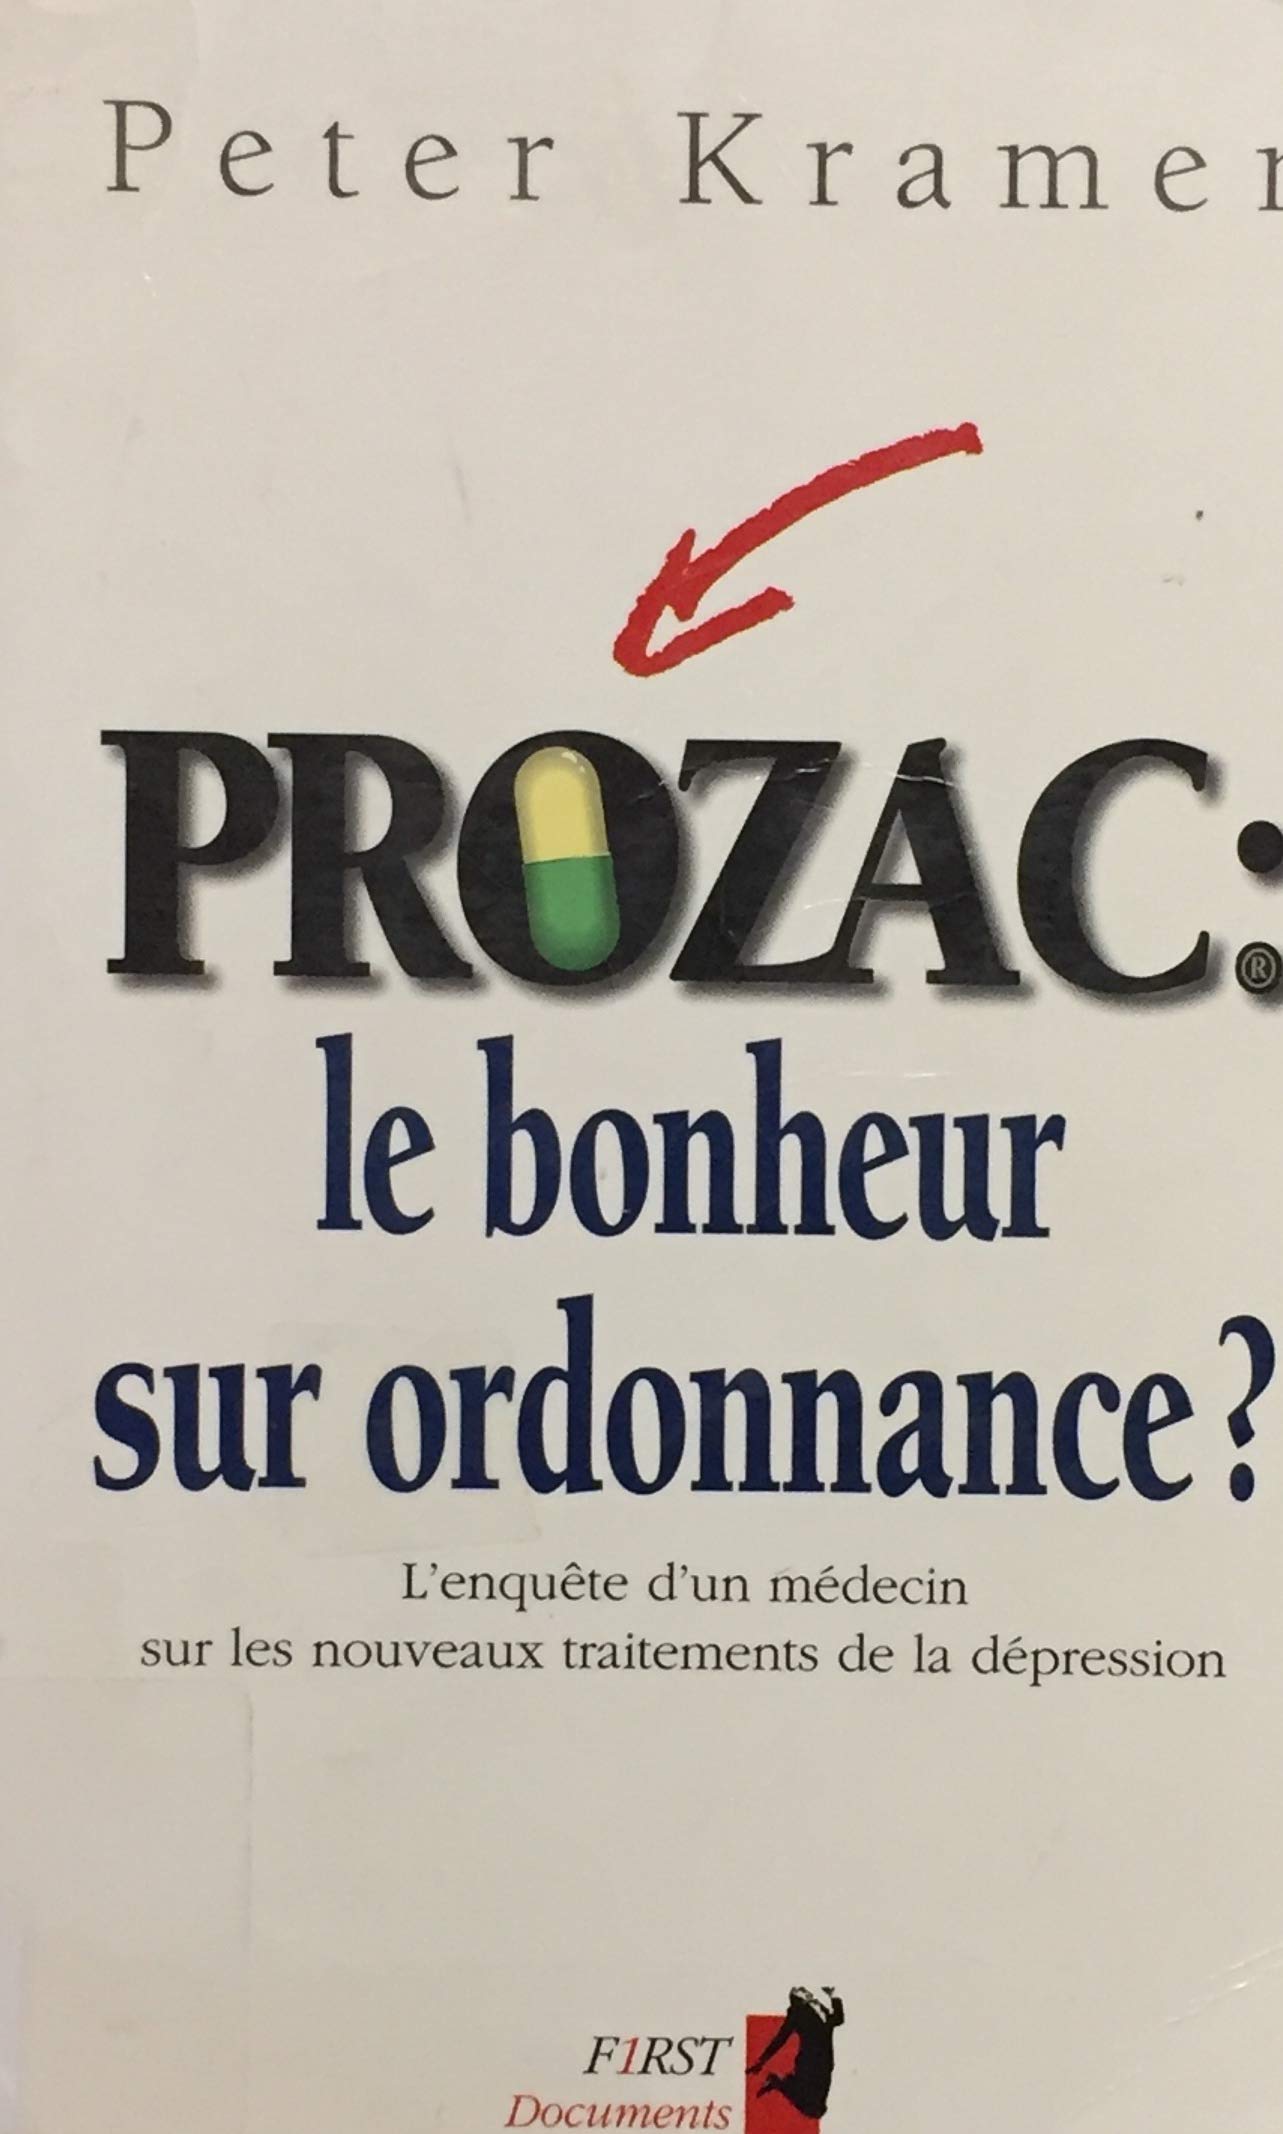 Livre ISBN 2876912414 Prozac : Le bonheur sur ordonnance? : L'enquête d'un médecin sur les nouveaux traitement de la dépression (Peter Kramer)